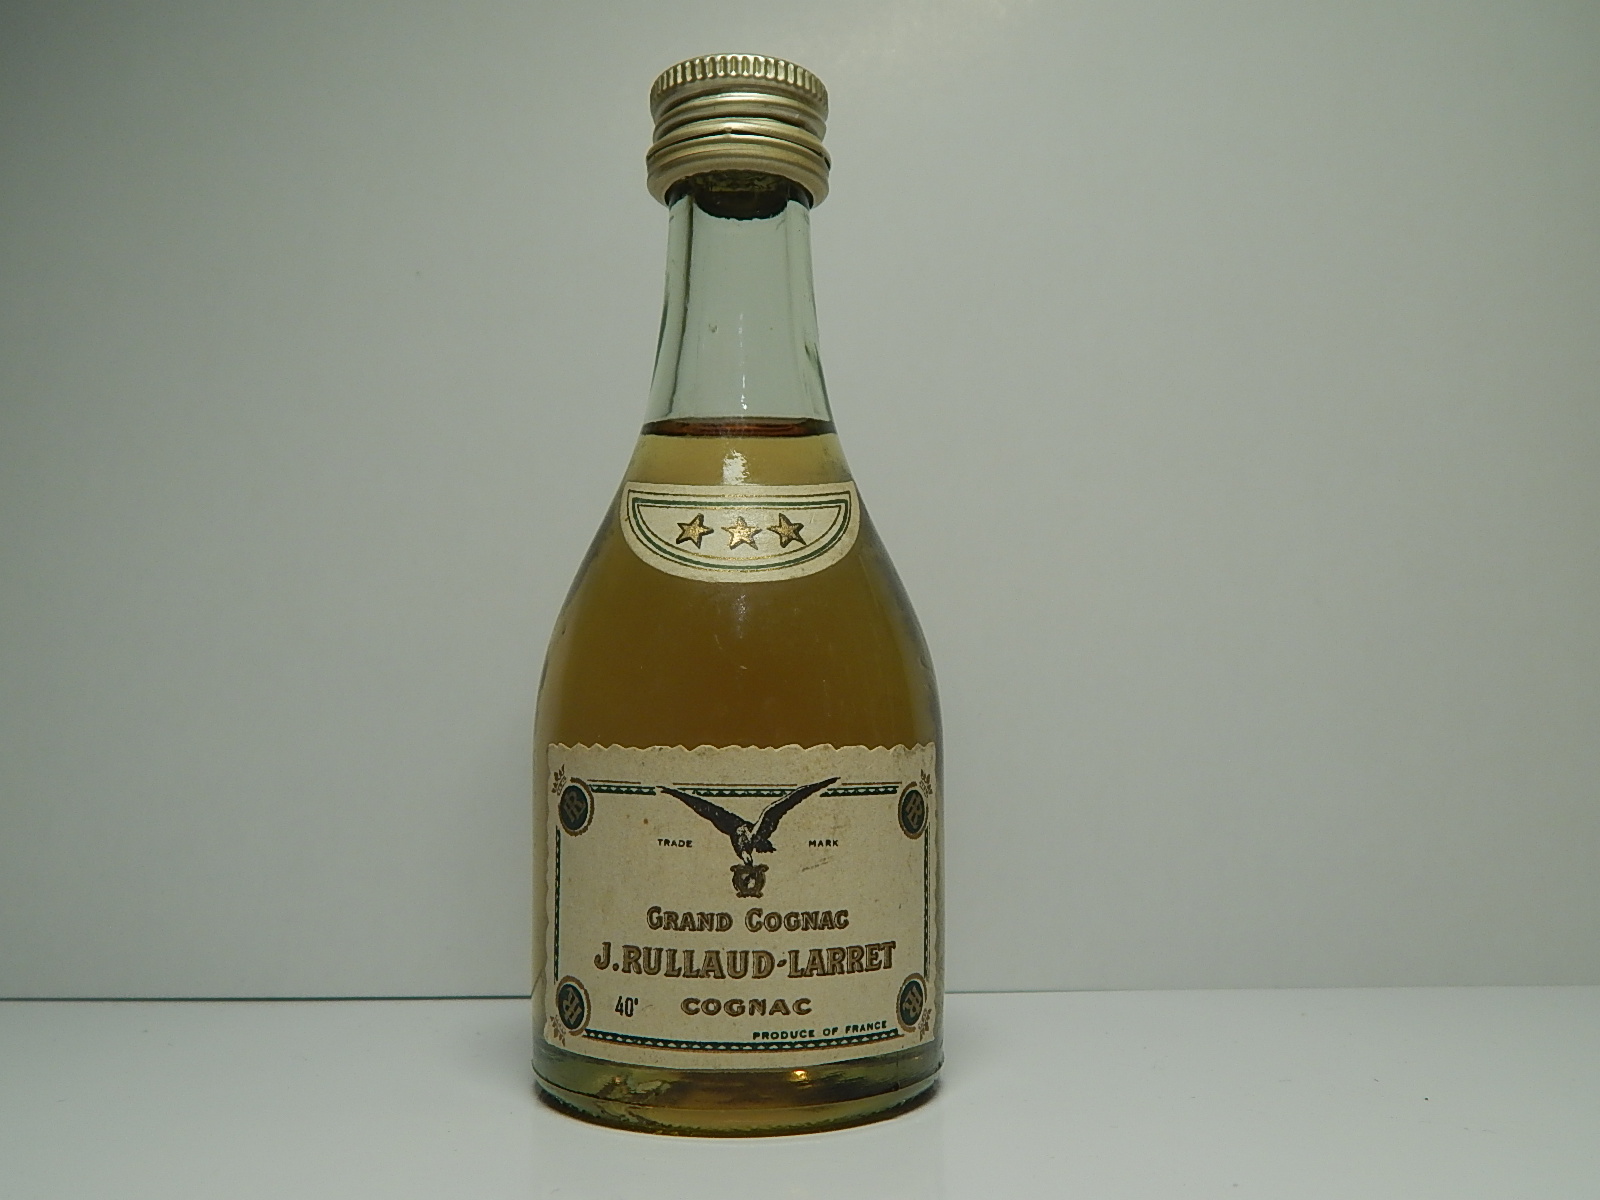 J.RULLAND-LARRET *** Grand Cognac